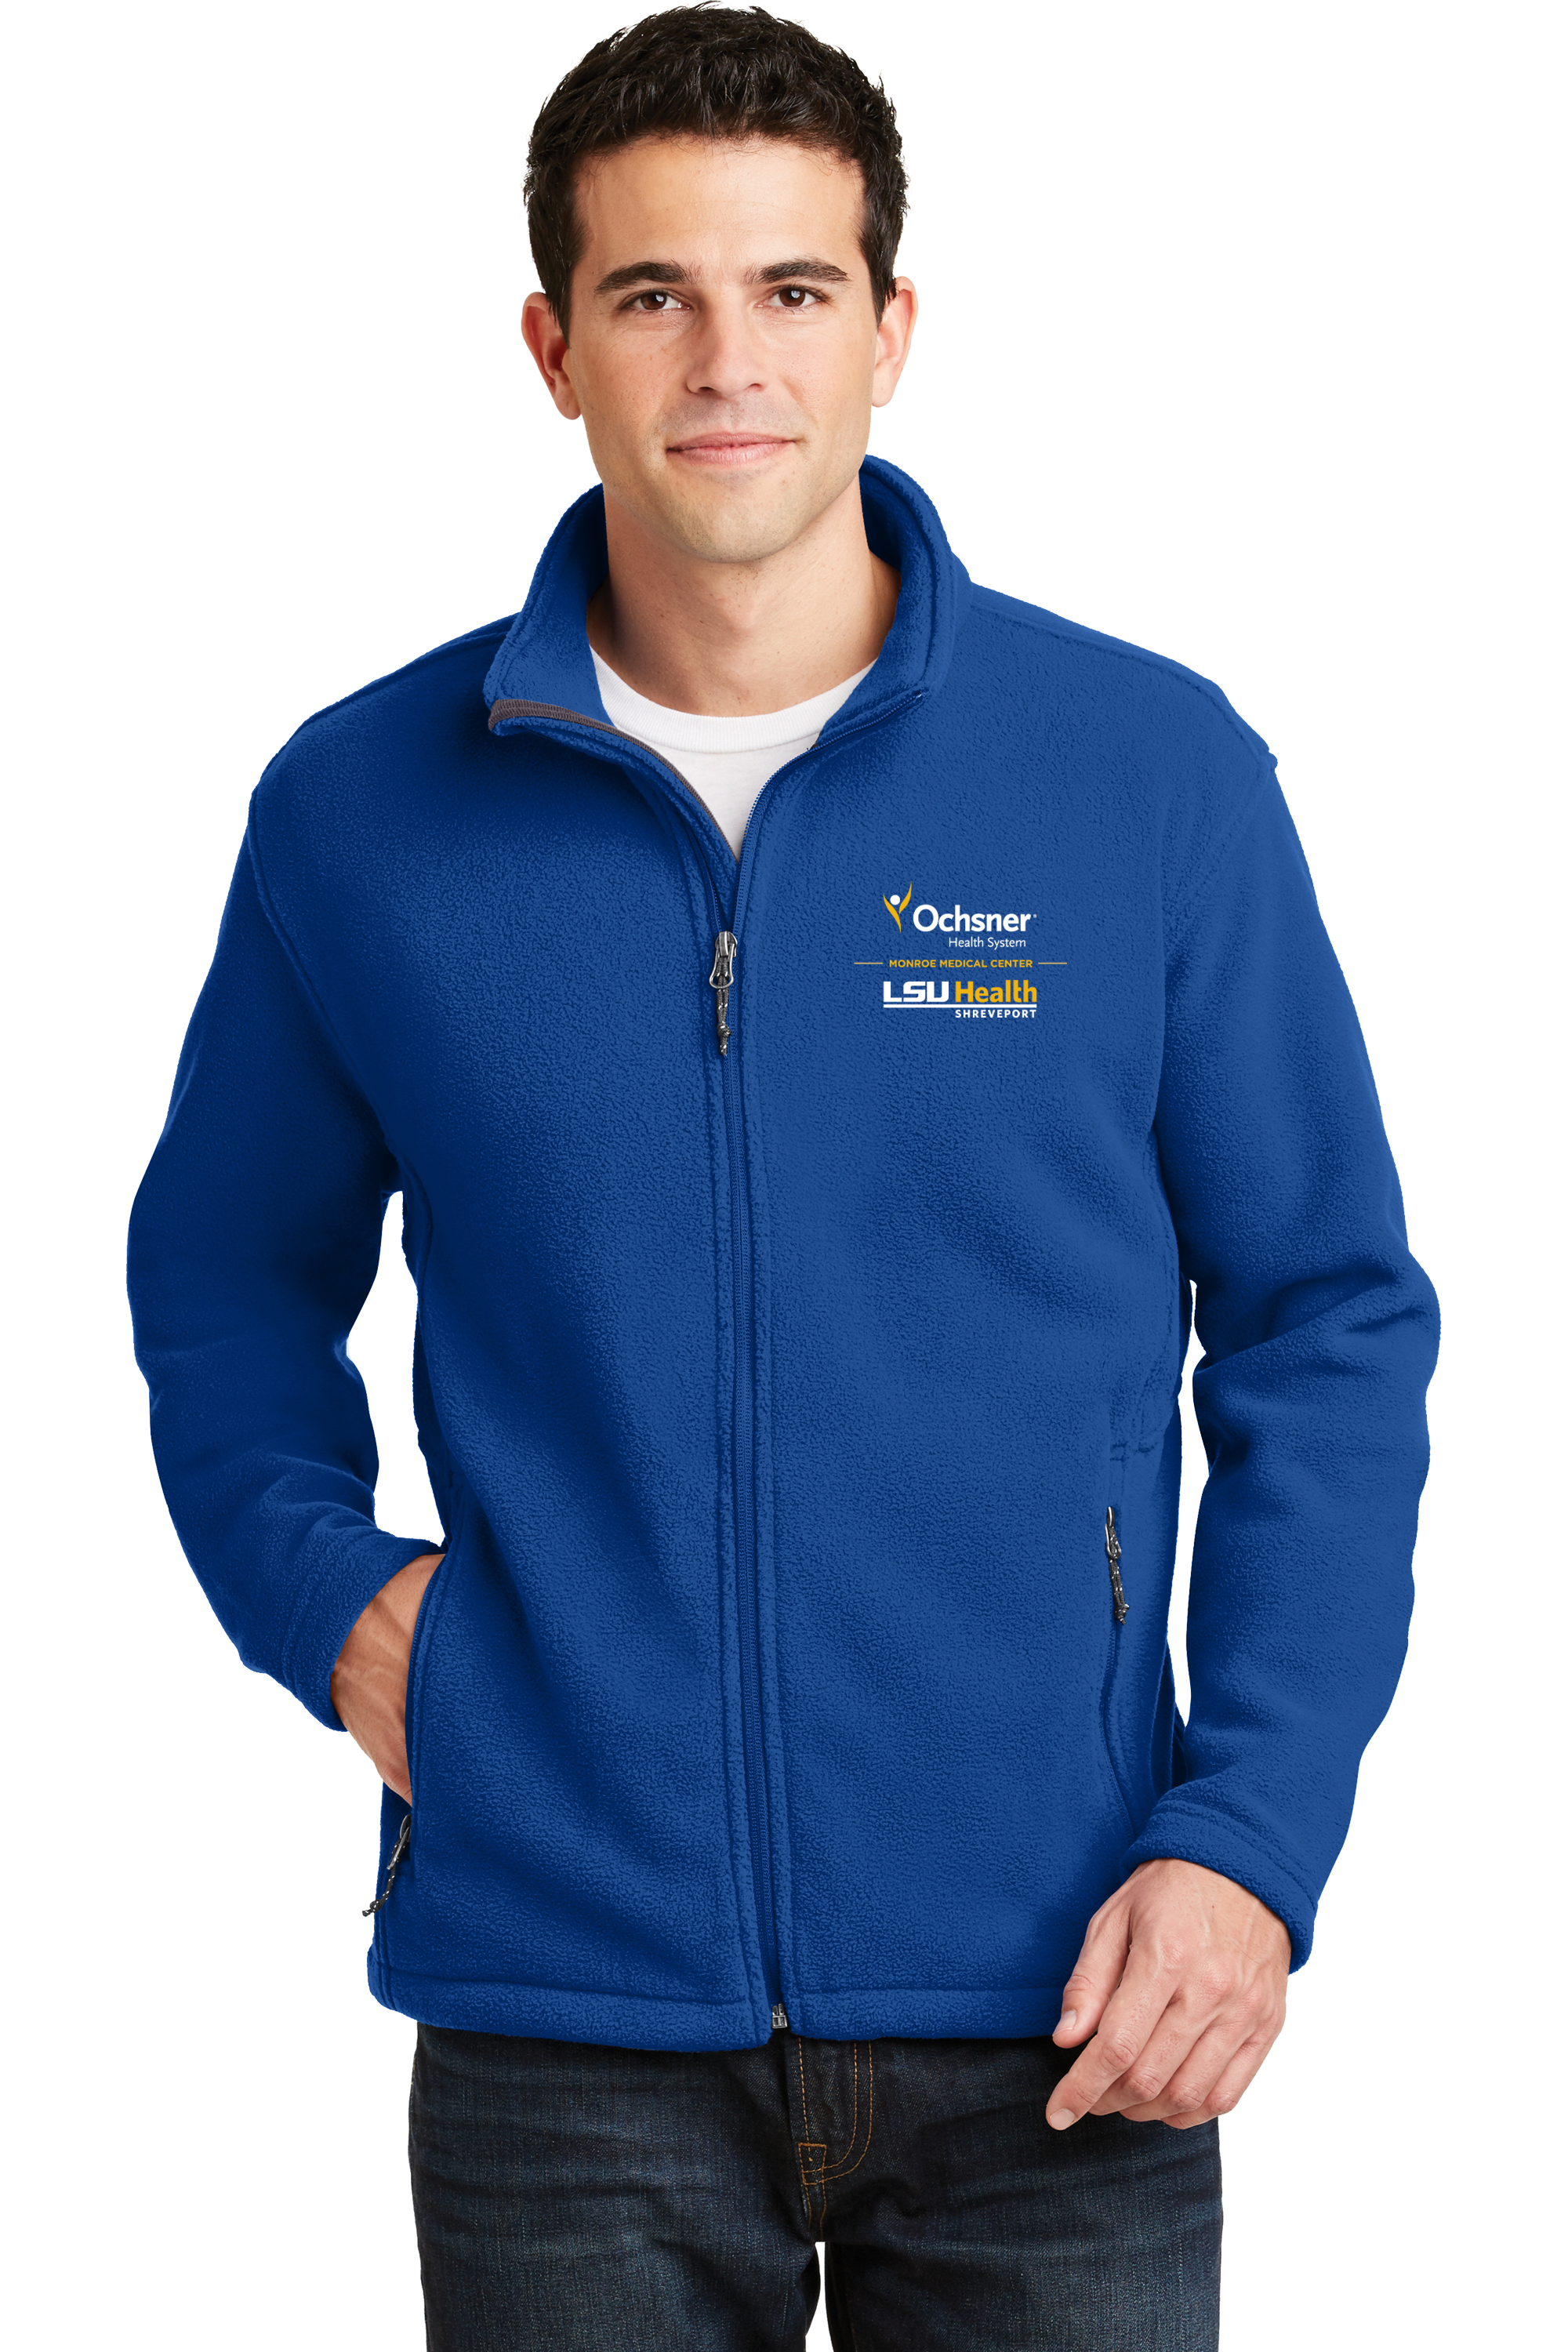 Port Authority Men's Value Fleece Ochsner/LSU Shreveport, Royal Blue, large image number 1